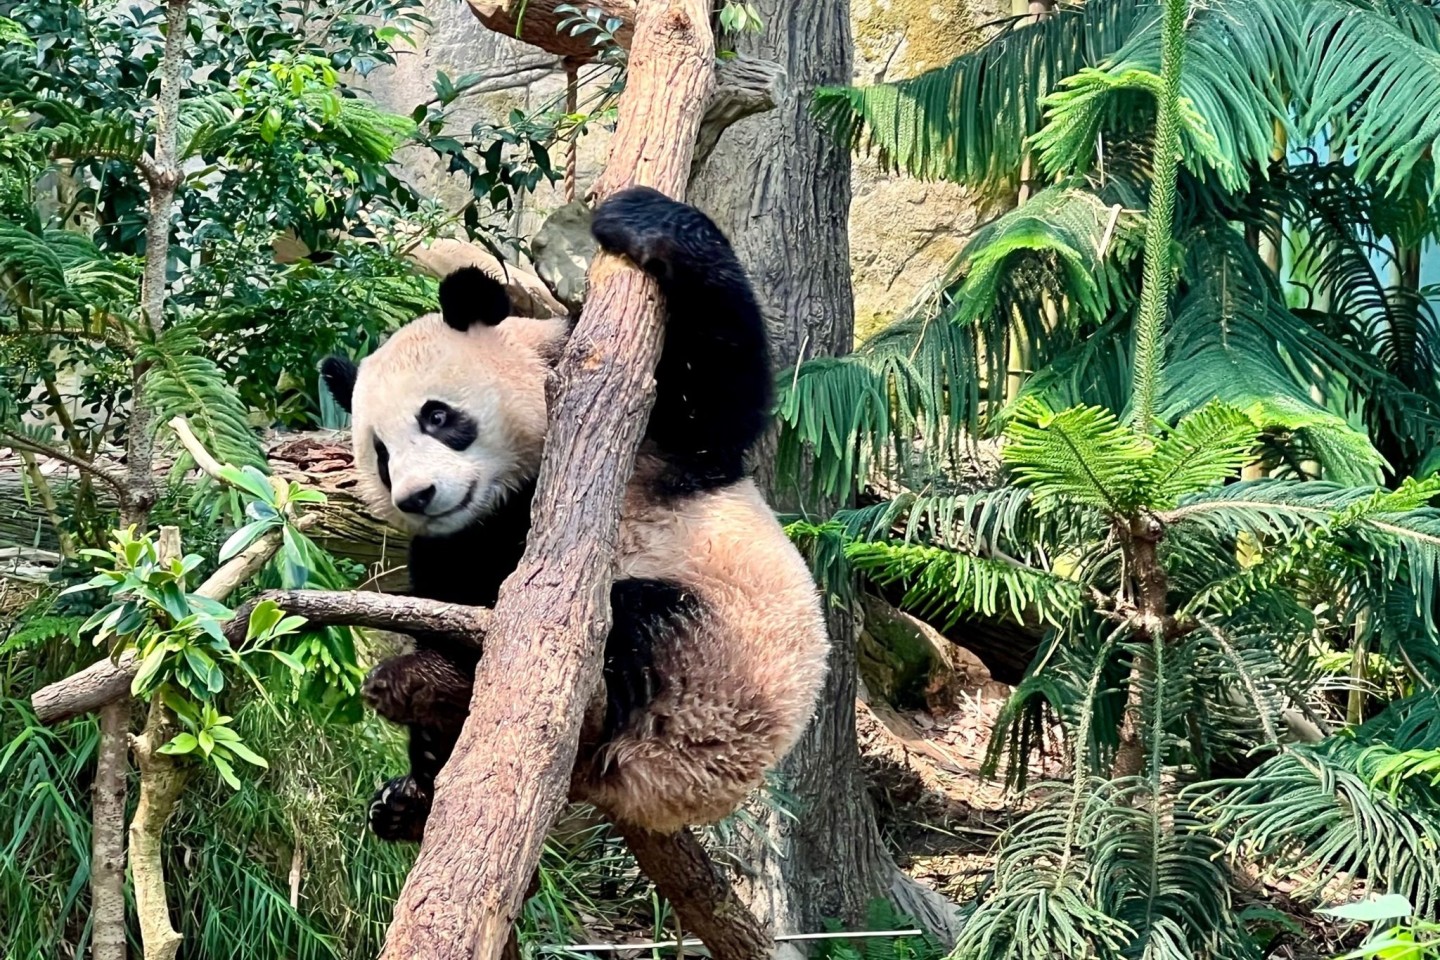 Noch bis zum 20. November können Besucher den kleinen Panda Le Le in seinem Gehege im Zoo in Singapur bestaunen.